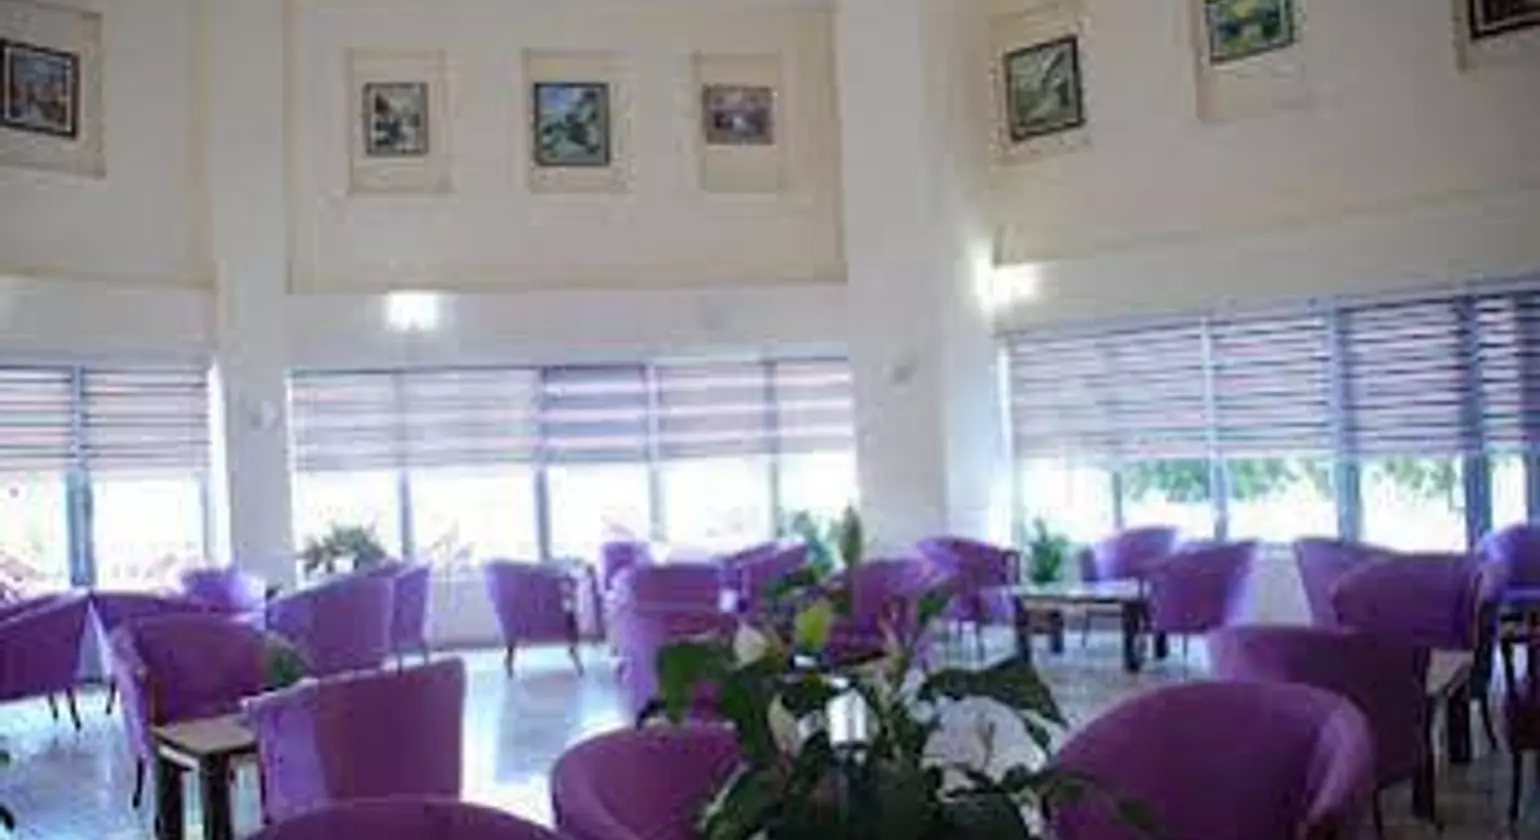 Side Yeşilöz Hotel